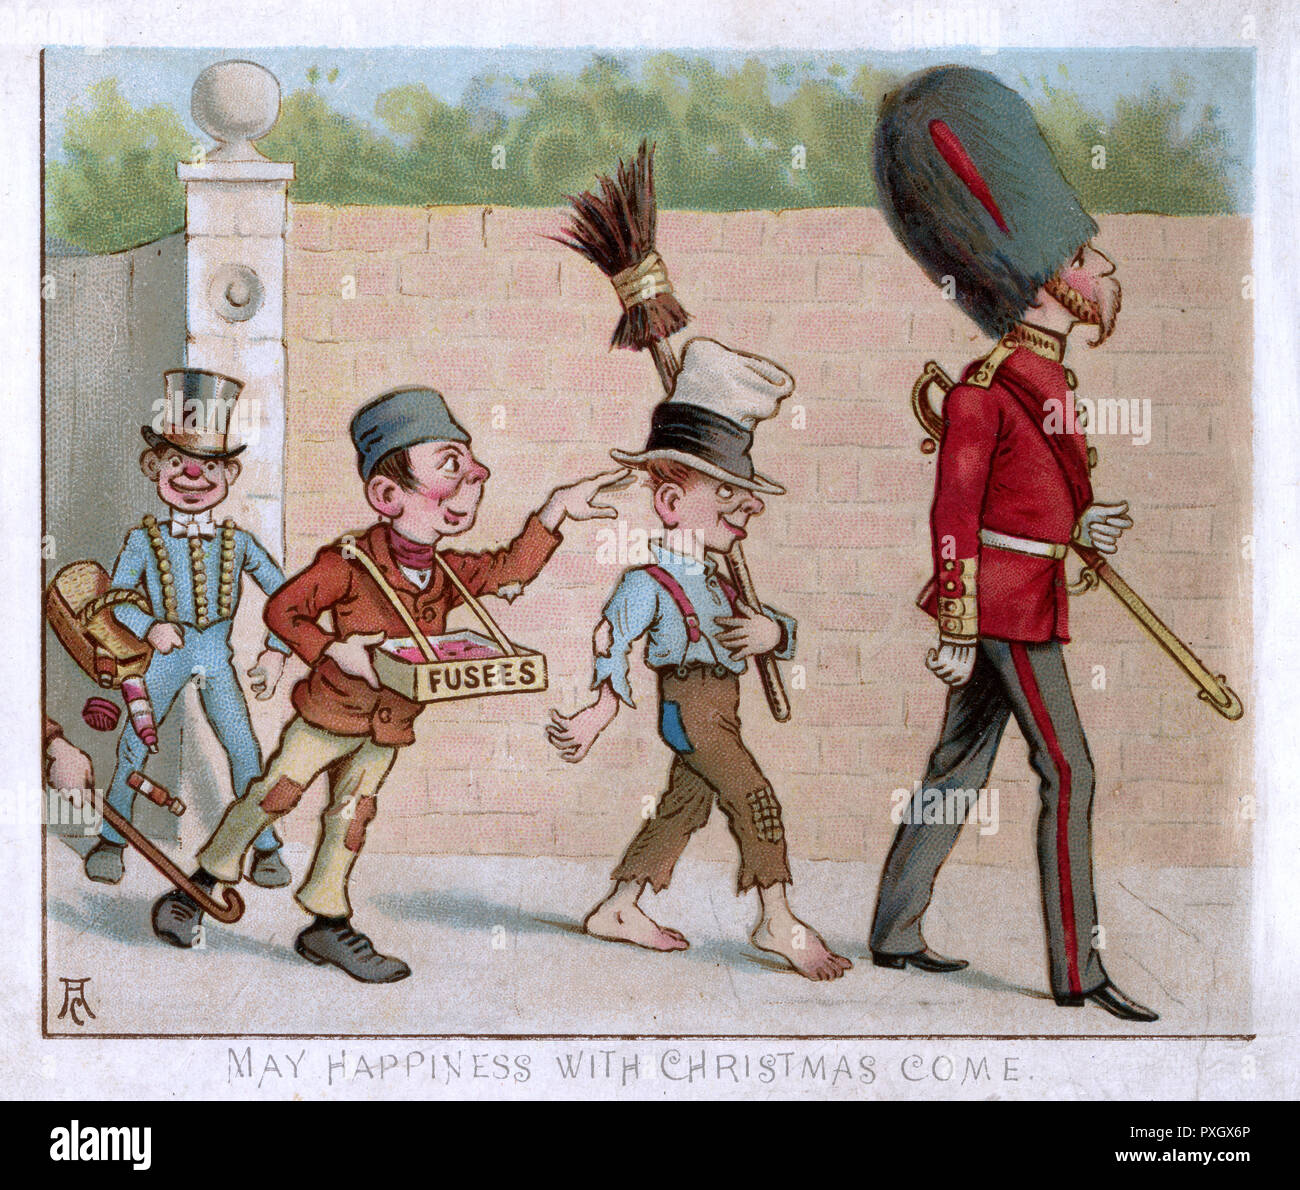 La carte de Noël humoristique - un plutôt stern-face guardsman est sur le point de recevoir un choc électrique comme une bande de n'er-n-well street urchins le suivent avec beaucoup de casse et de roquettes... ! ! Date : vers 1890 Banque D'Images